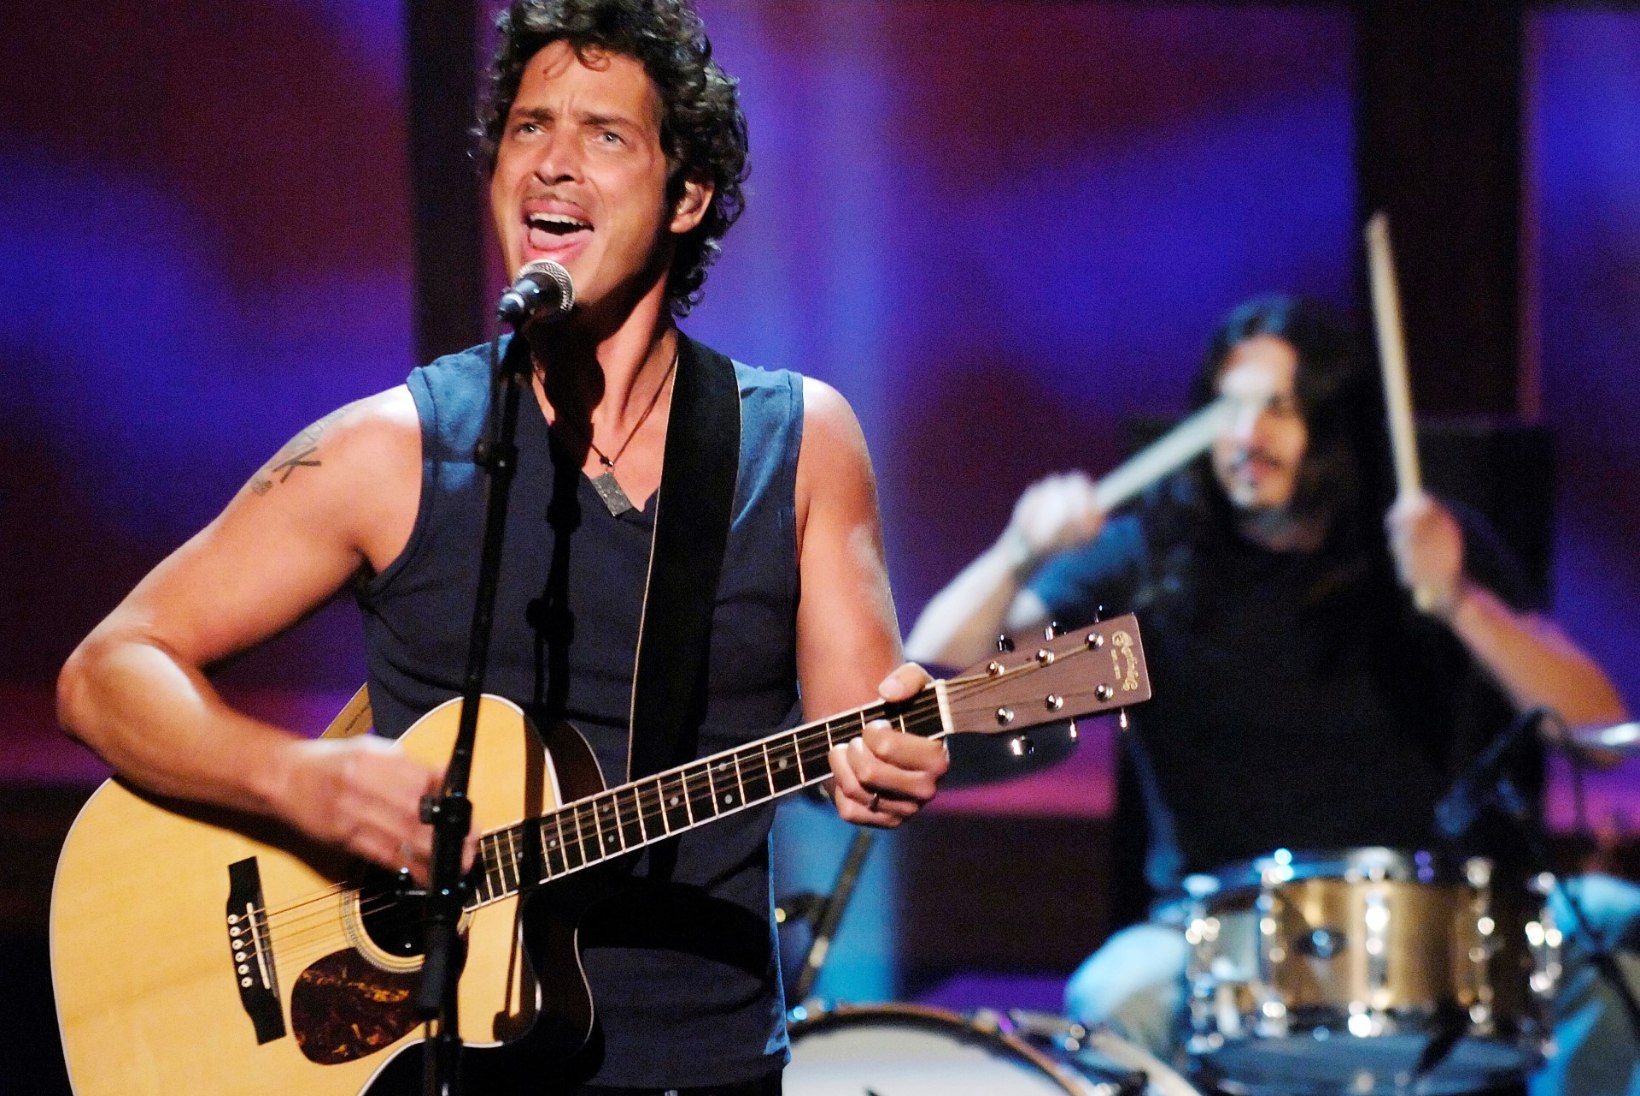 Soundgardeni laulja lese südantlõhestav kiri: "Ma tean, et see polnud sina."